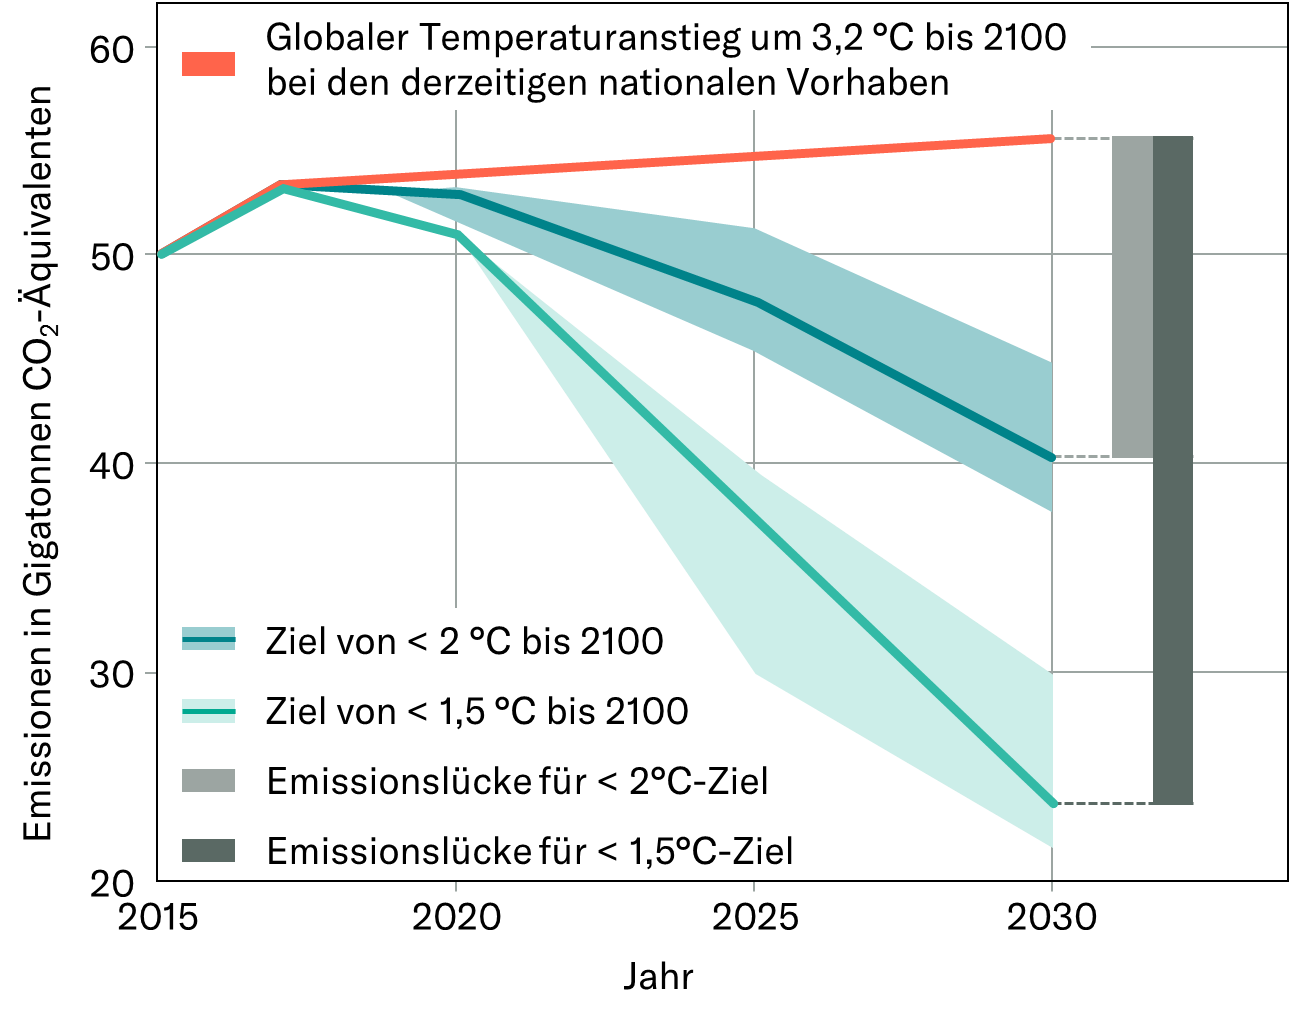 Emissionen von Treibhausgasen im Status Quo Szenario